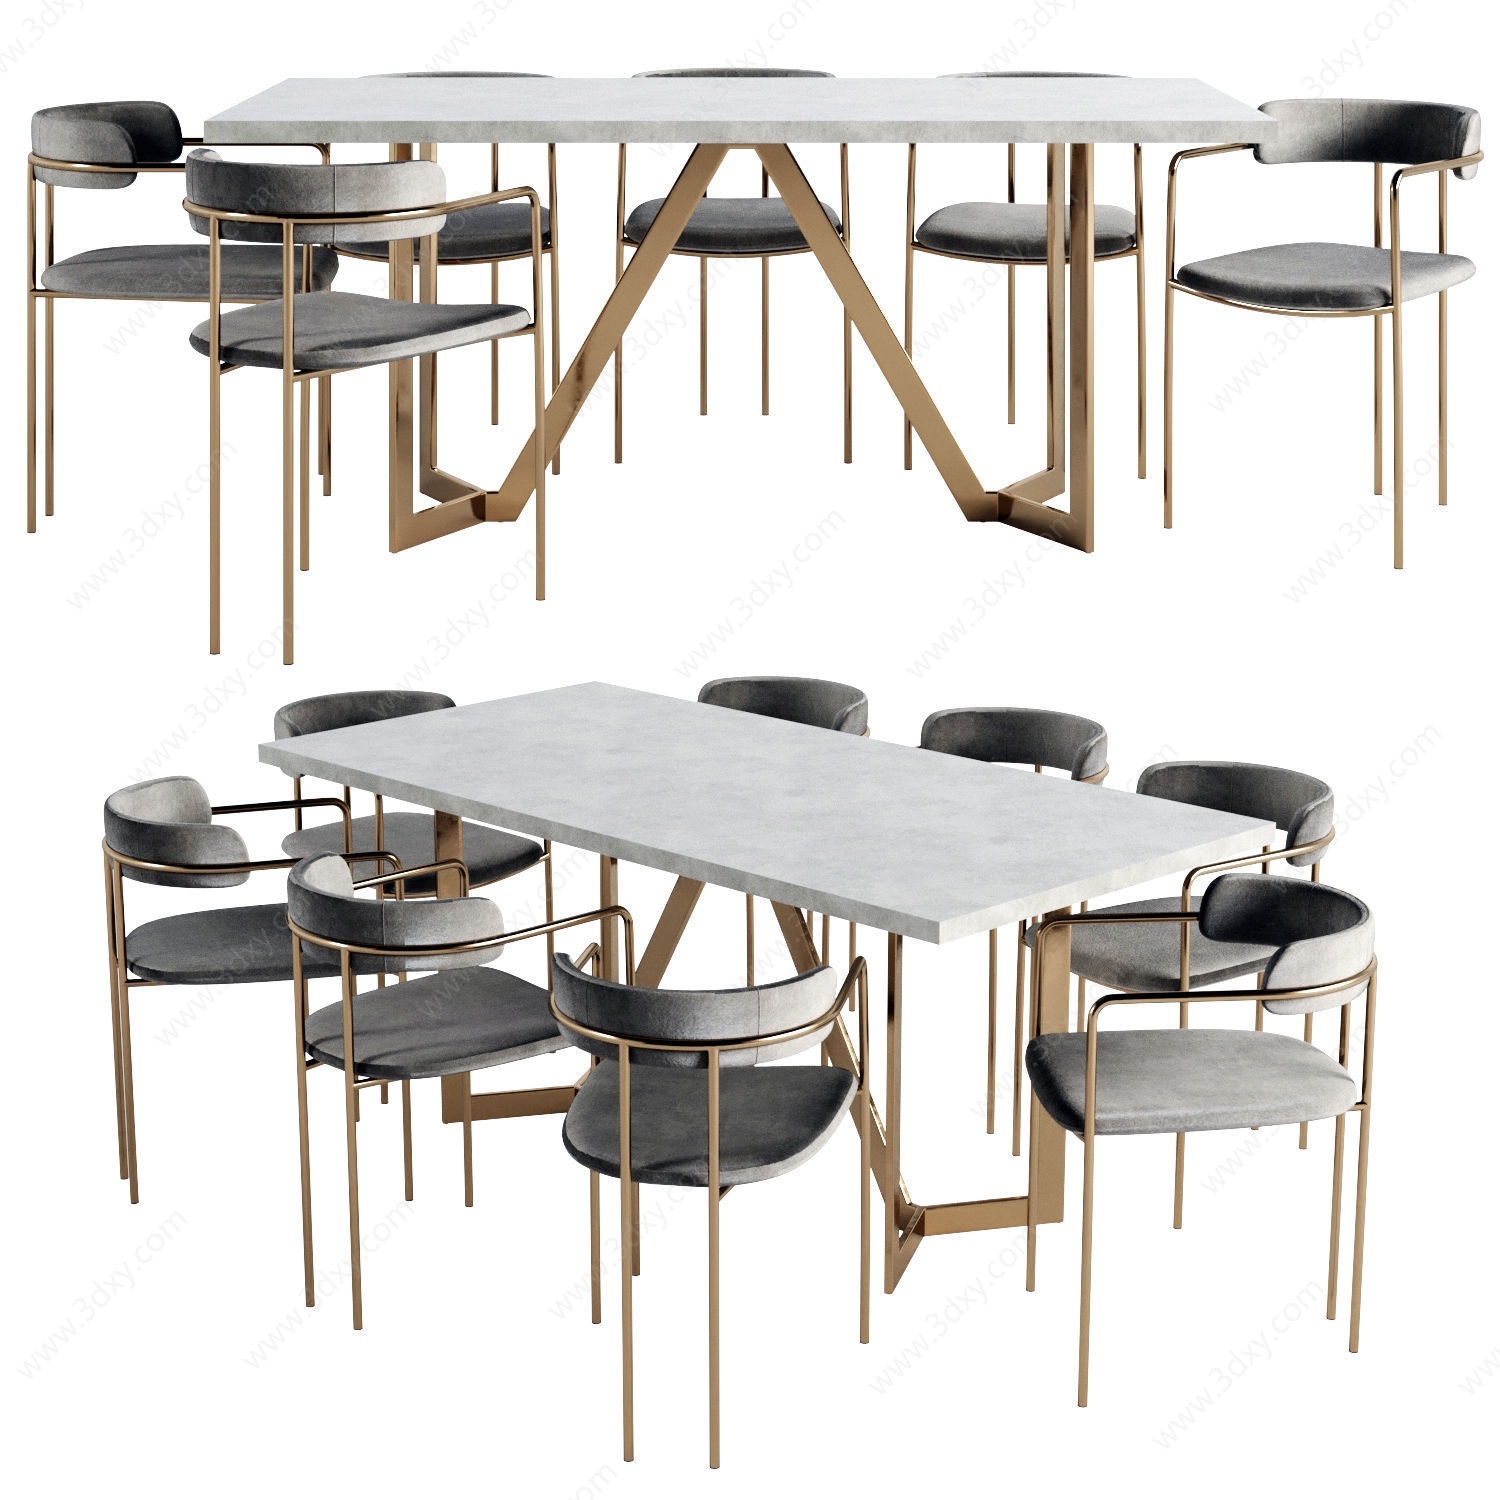 休闲多人餐桌椅铁艺组合3D模型